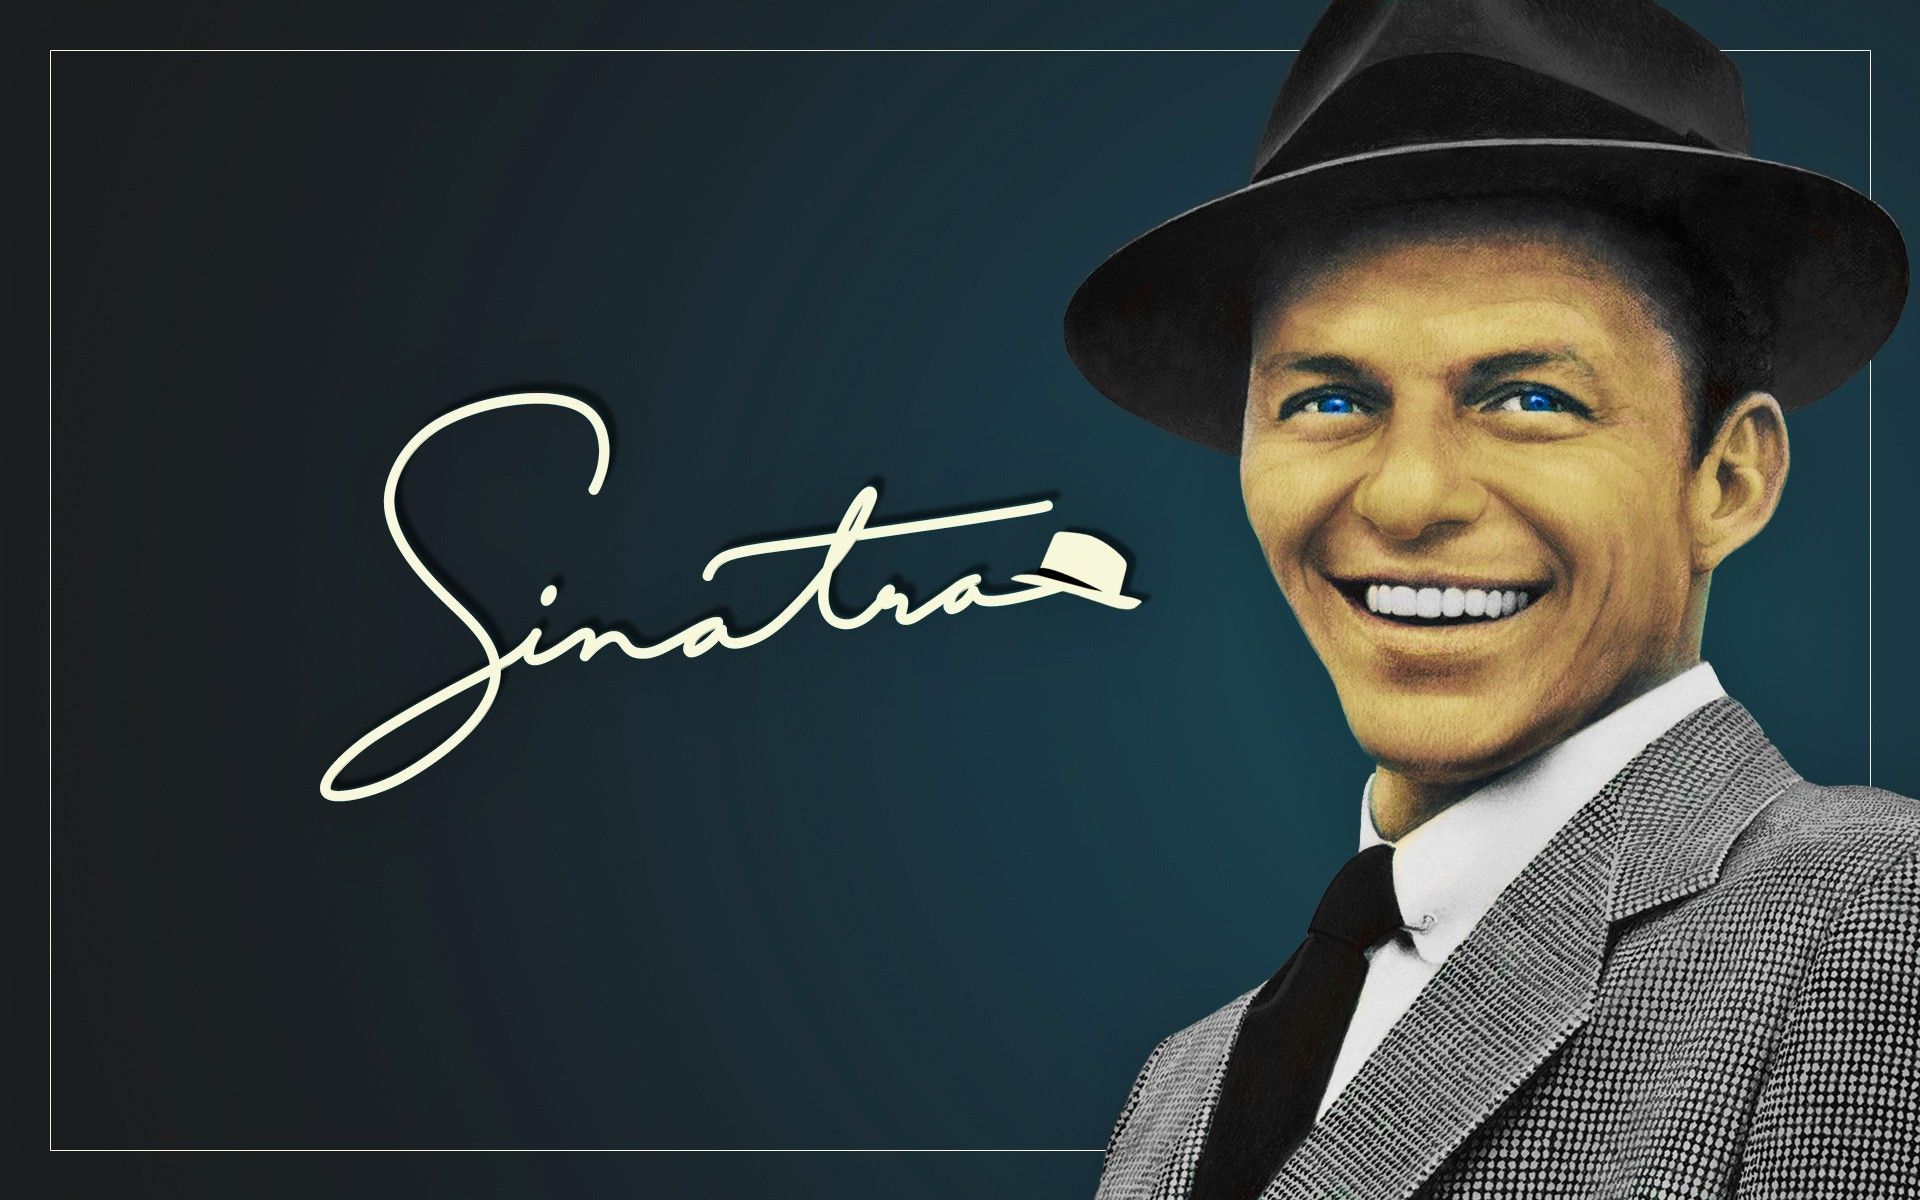 Fonds d'écran Frank Sinatra : tous les wallpapers Frank Sinatra